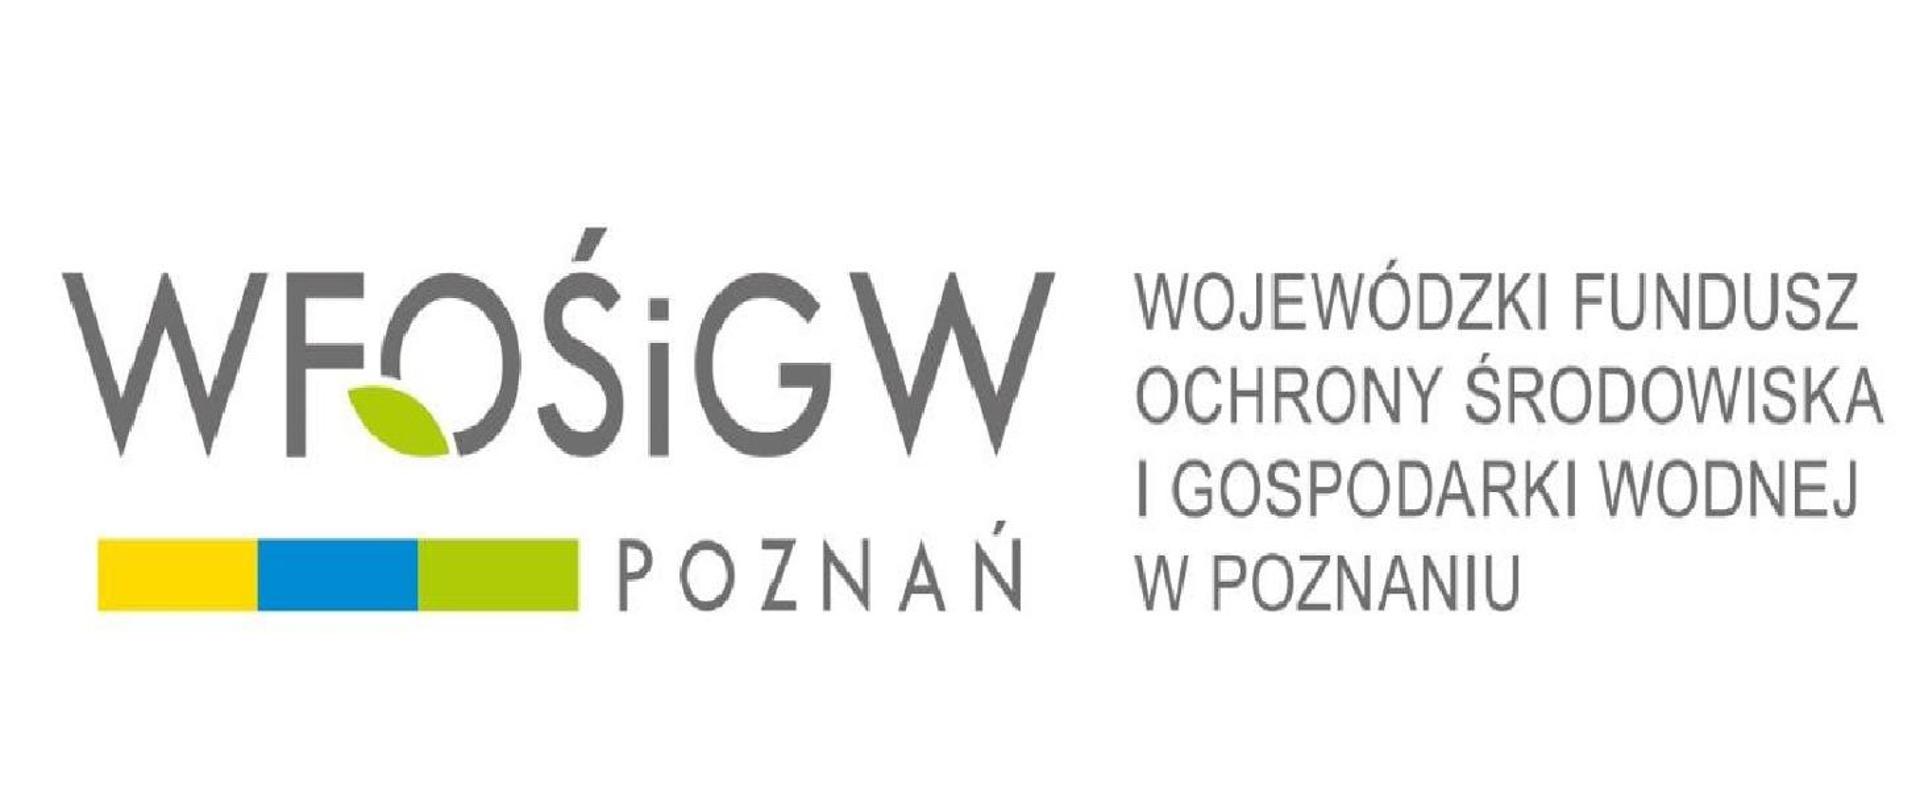 Logo Wojewódzkiego Funduszu Ochrony Srodowiska i Gospodarki Wodnej w Poznaniu